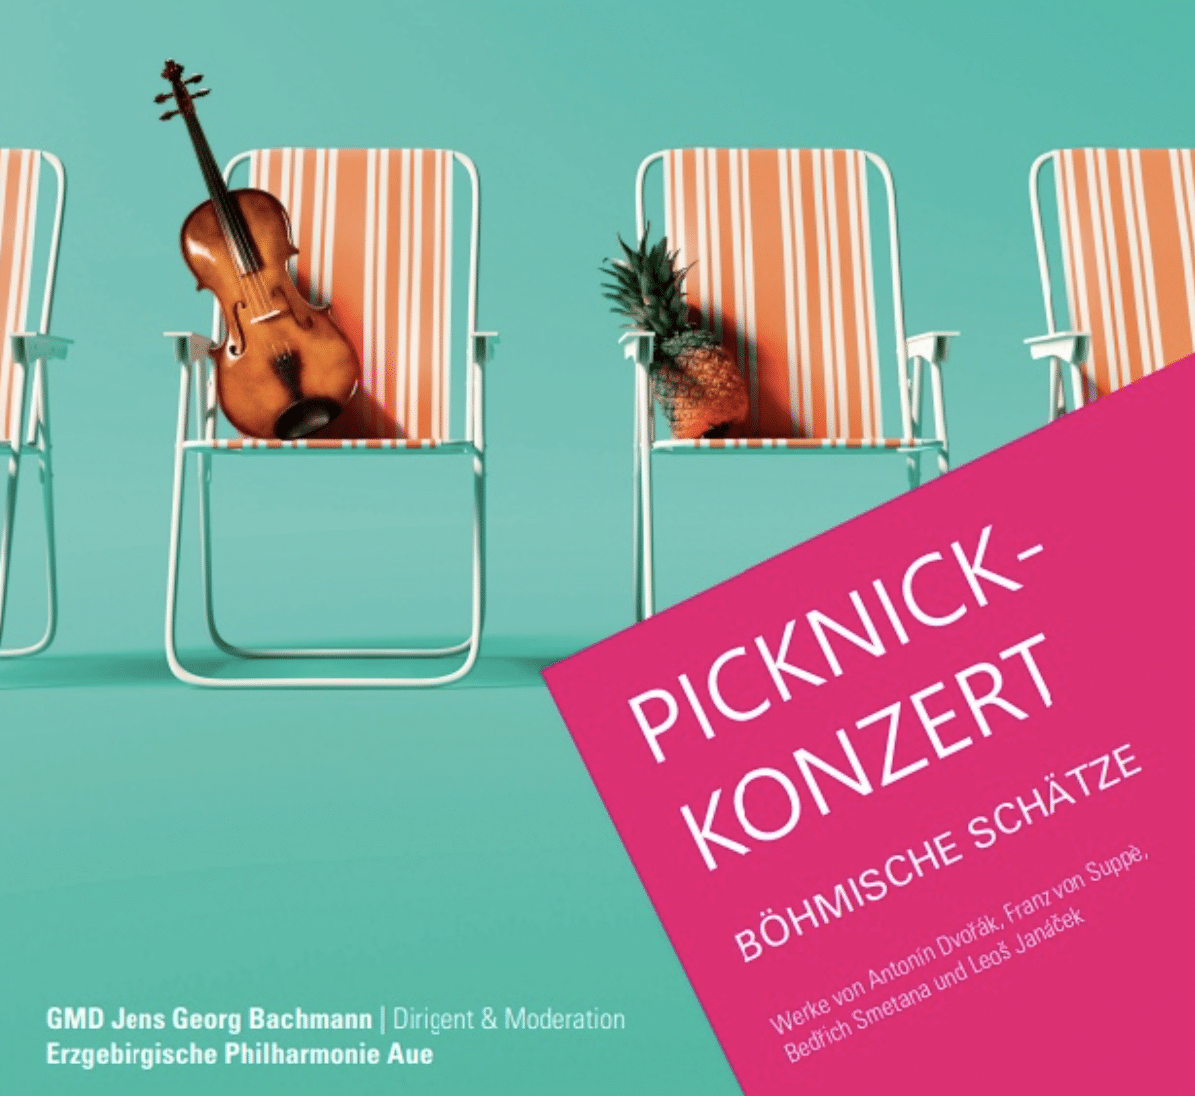 Picknick-Konzert mit der Erzgebirgischen Philharmonie Aue